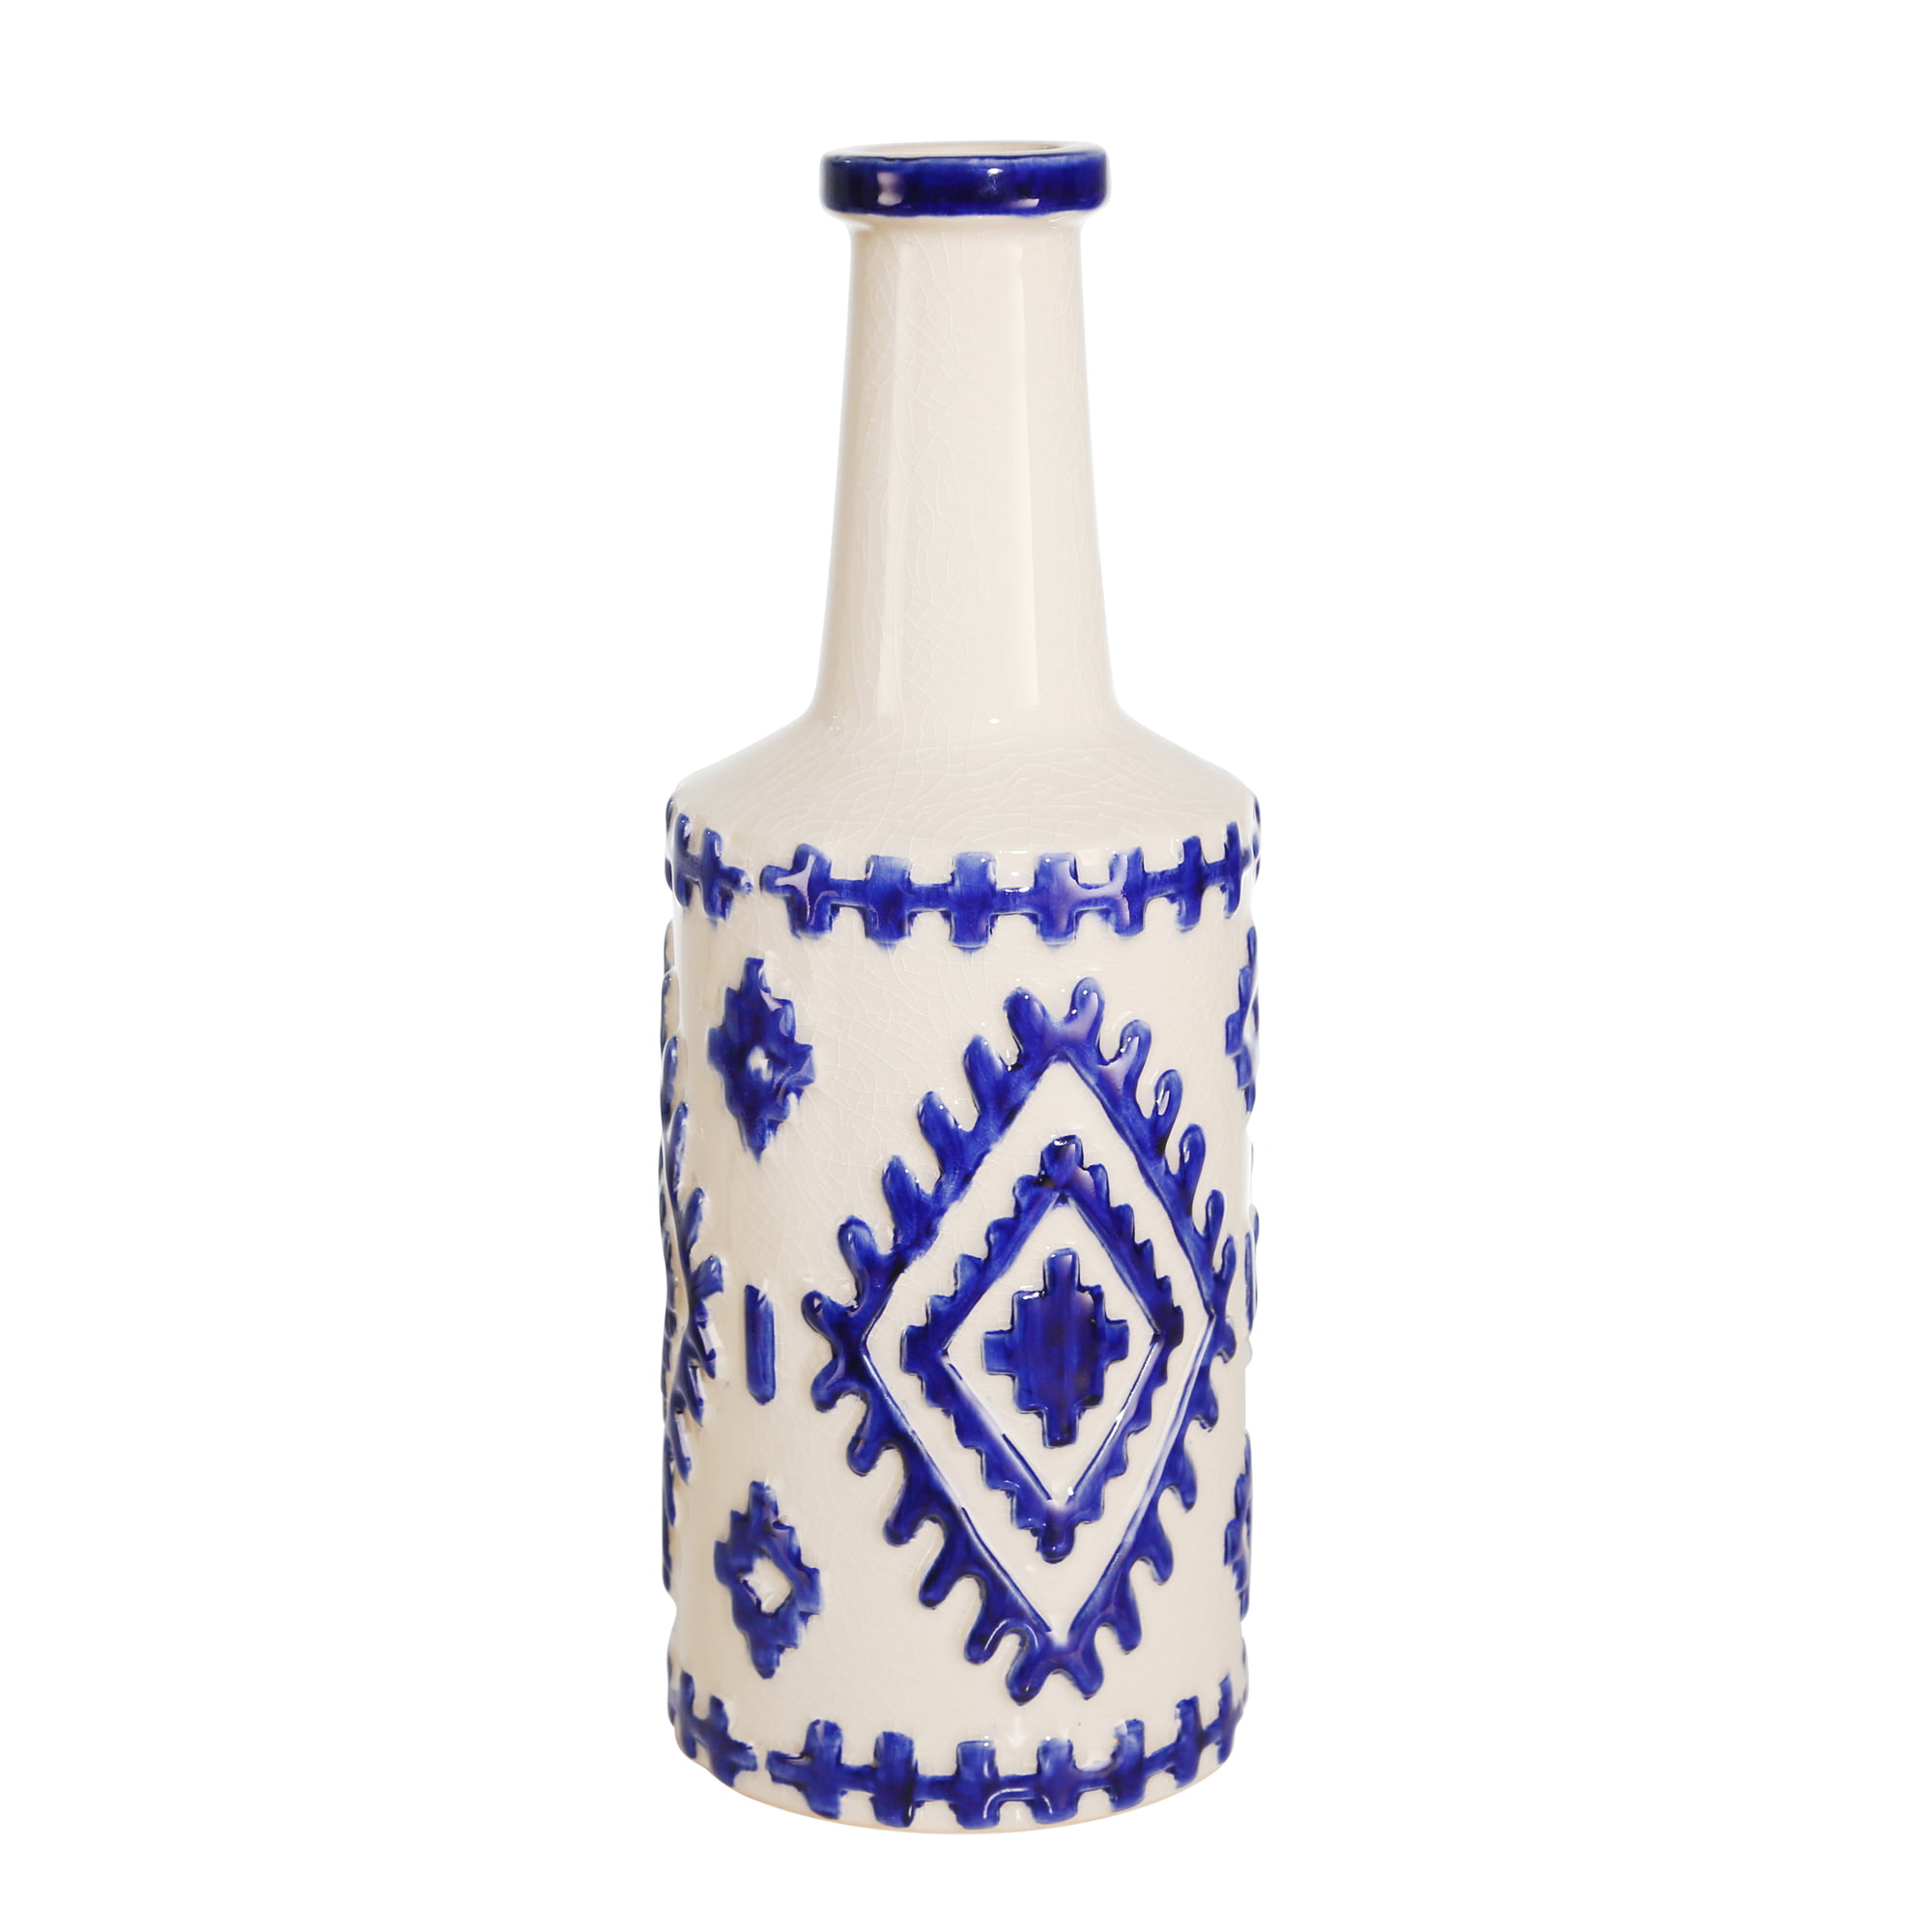 4.5 x 4.5 x 12.75 Inches Sagebrook Home 11927 Marbled Ceramic Vase Ceramic